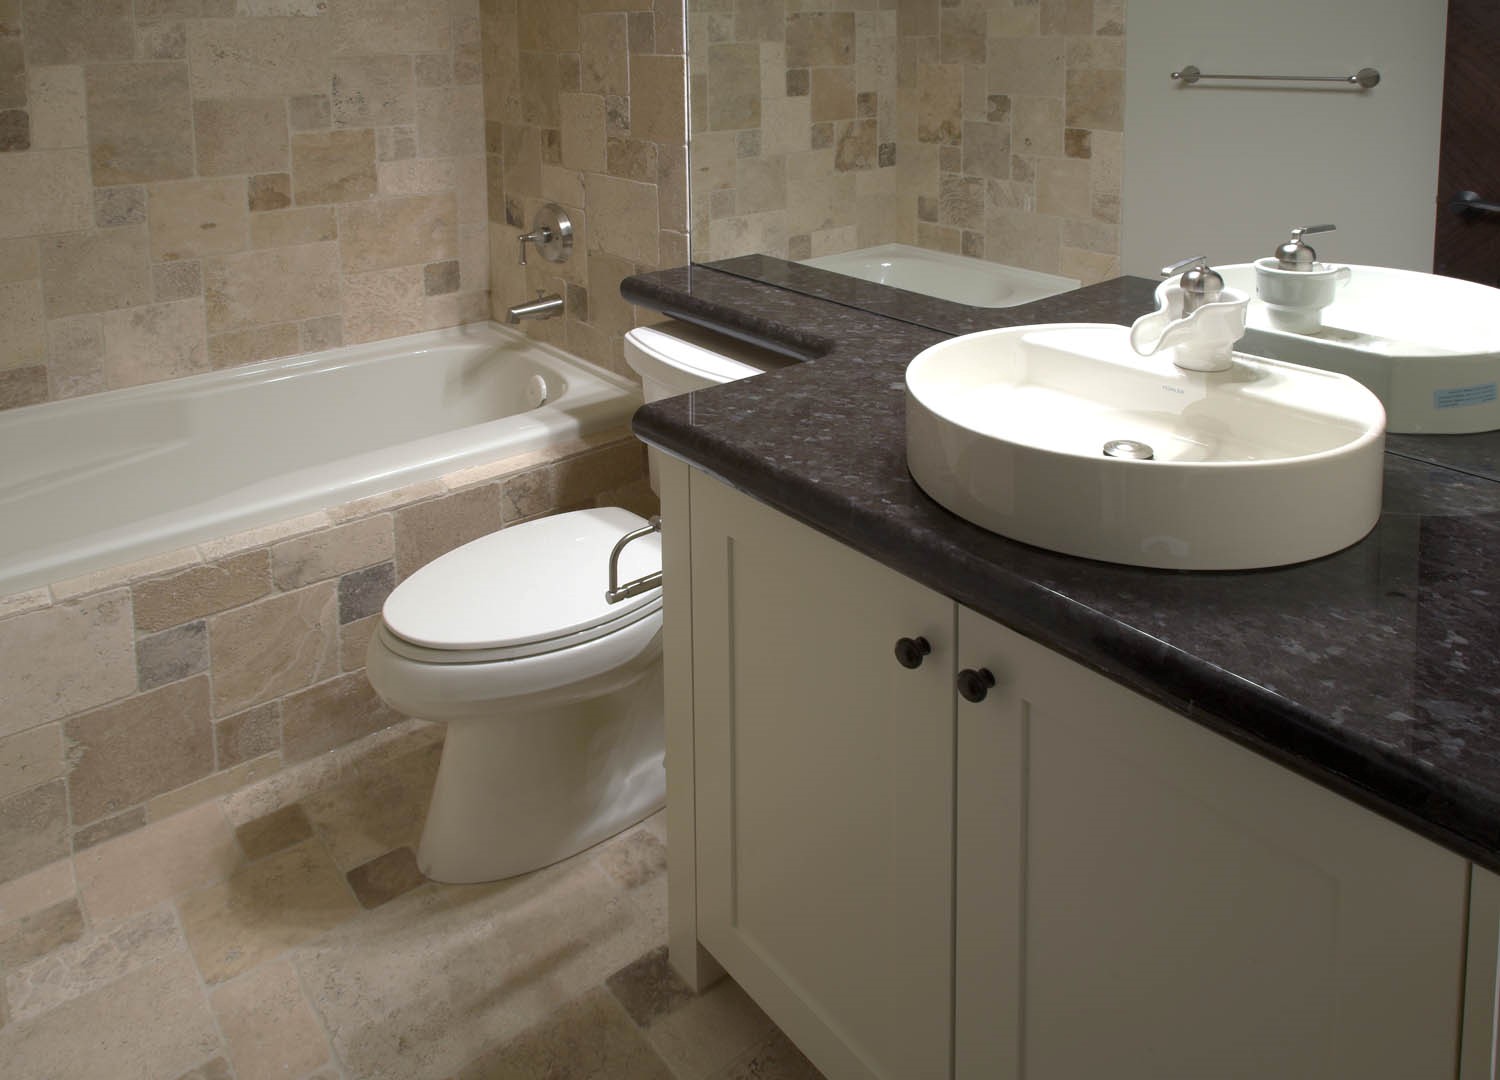 Bathroom Granite Countertops With Sink Kitchen Bath Remodel Custom Cabinets Countertops Melbourne Fl,Quinoa Protein Per 100g